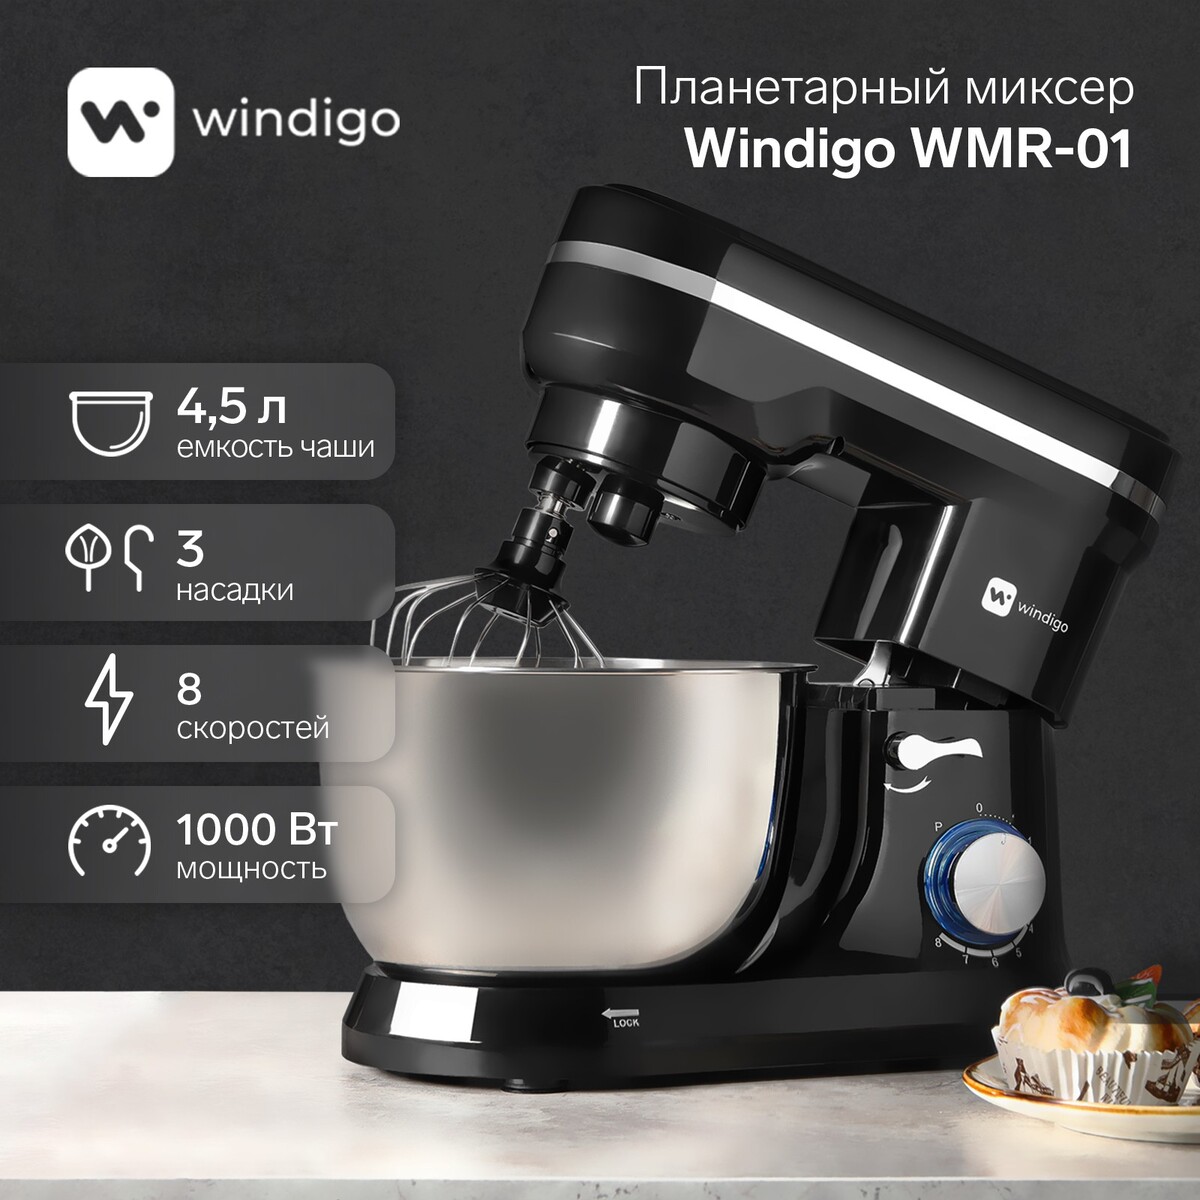 Миксер windigo wmr-01, планетарный, 1000 вт, 4.5 л, 8 скоростей, 3 насадки, черный